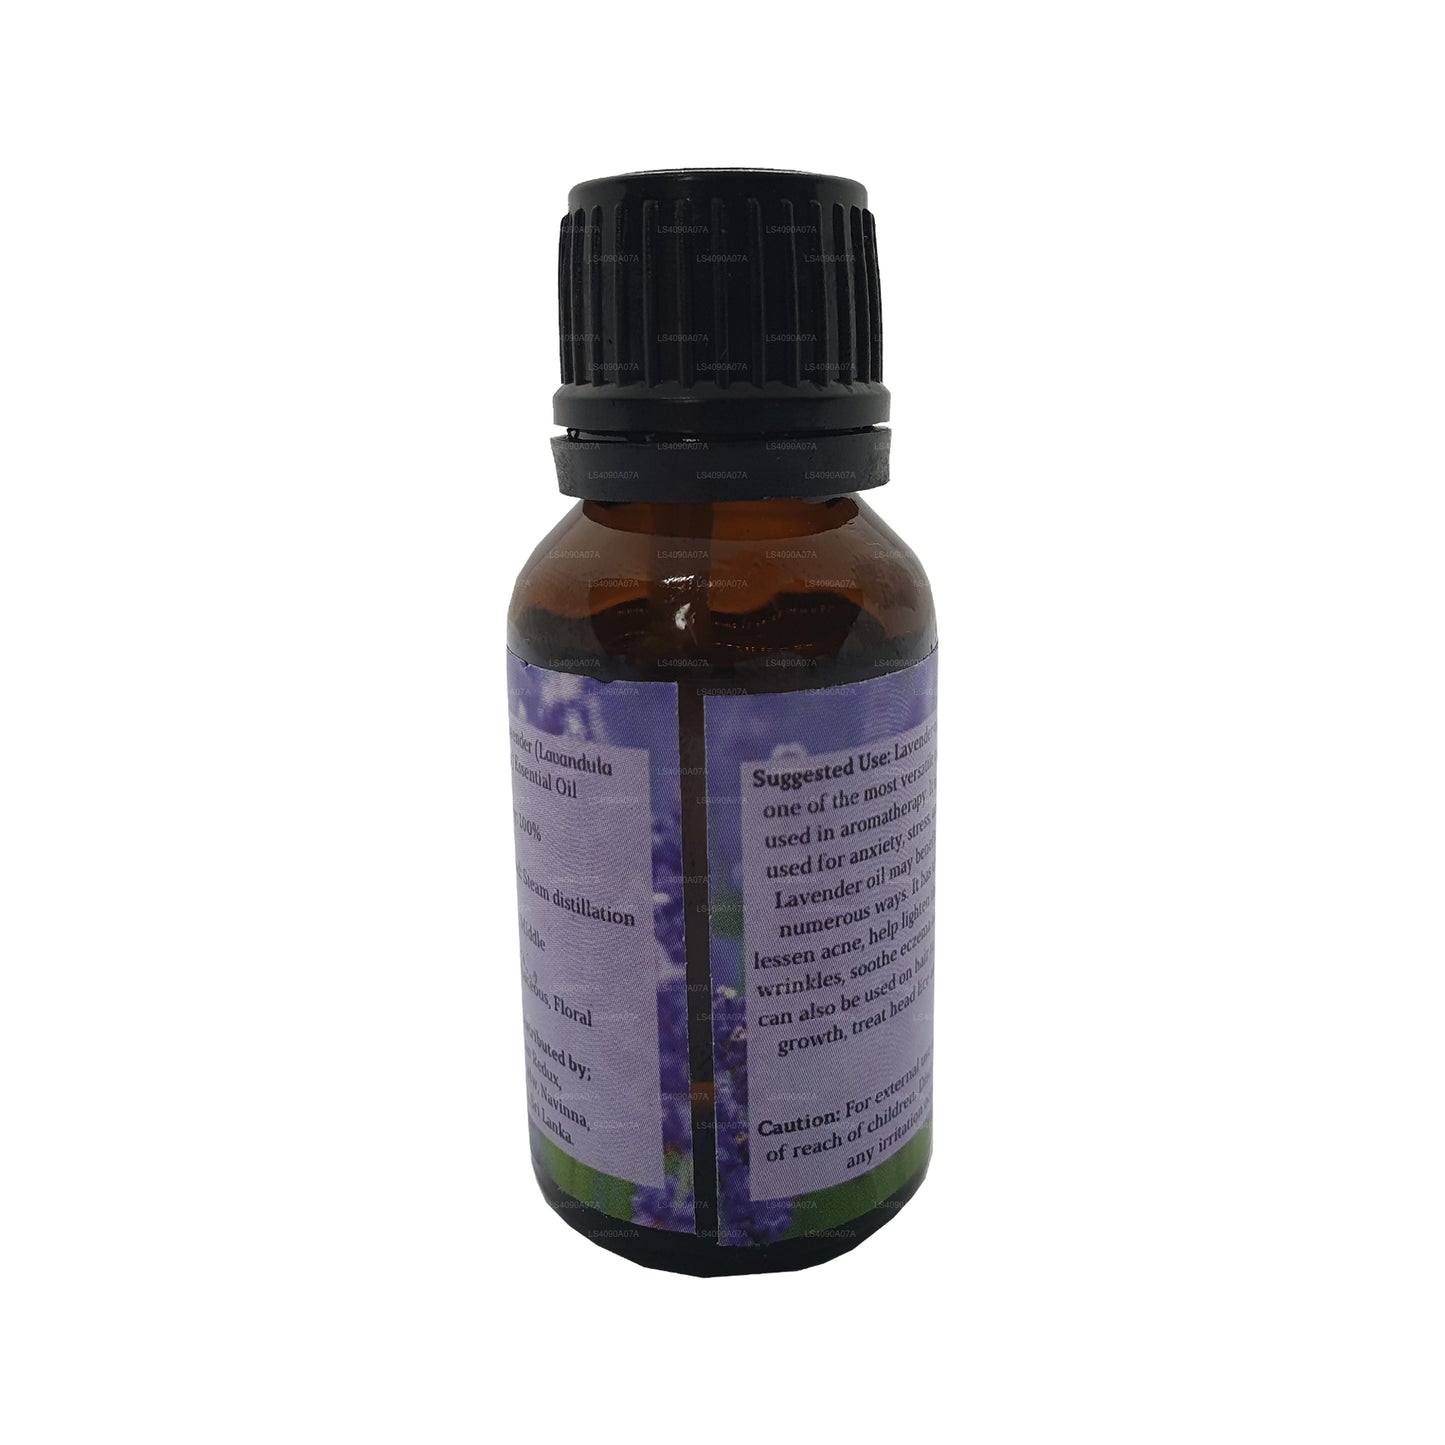 Lakpura lavendel æterisk olie (15 ml)